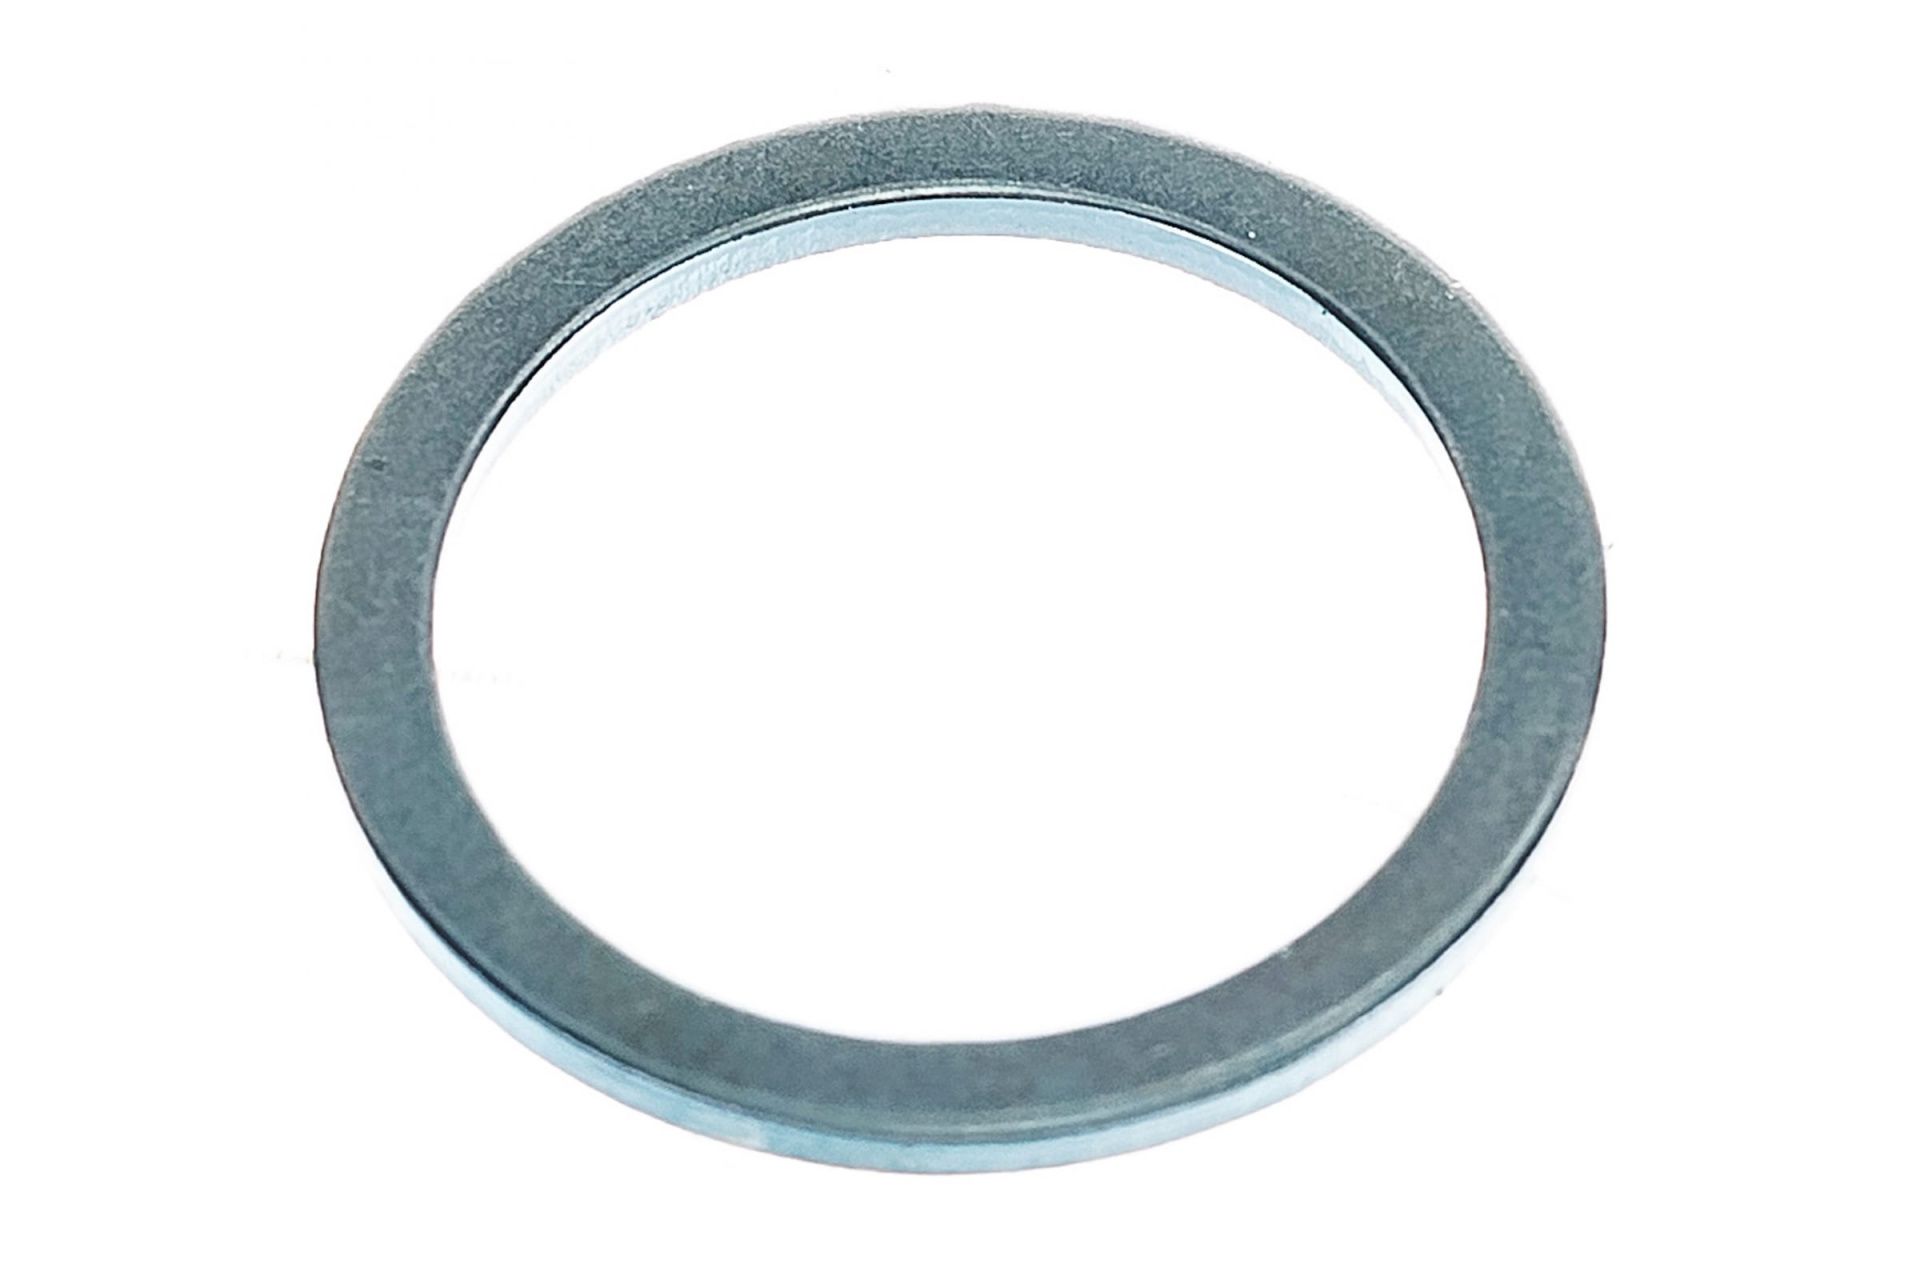 Кольцо переходное для дисков, 2 шт, толщина 1,4 и 1,2 мм ПРАКТИКА 20 / 16 мм